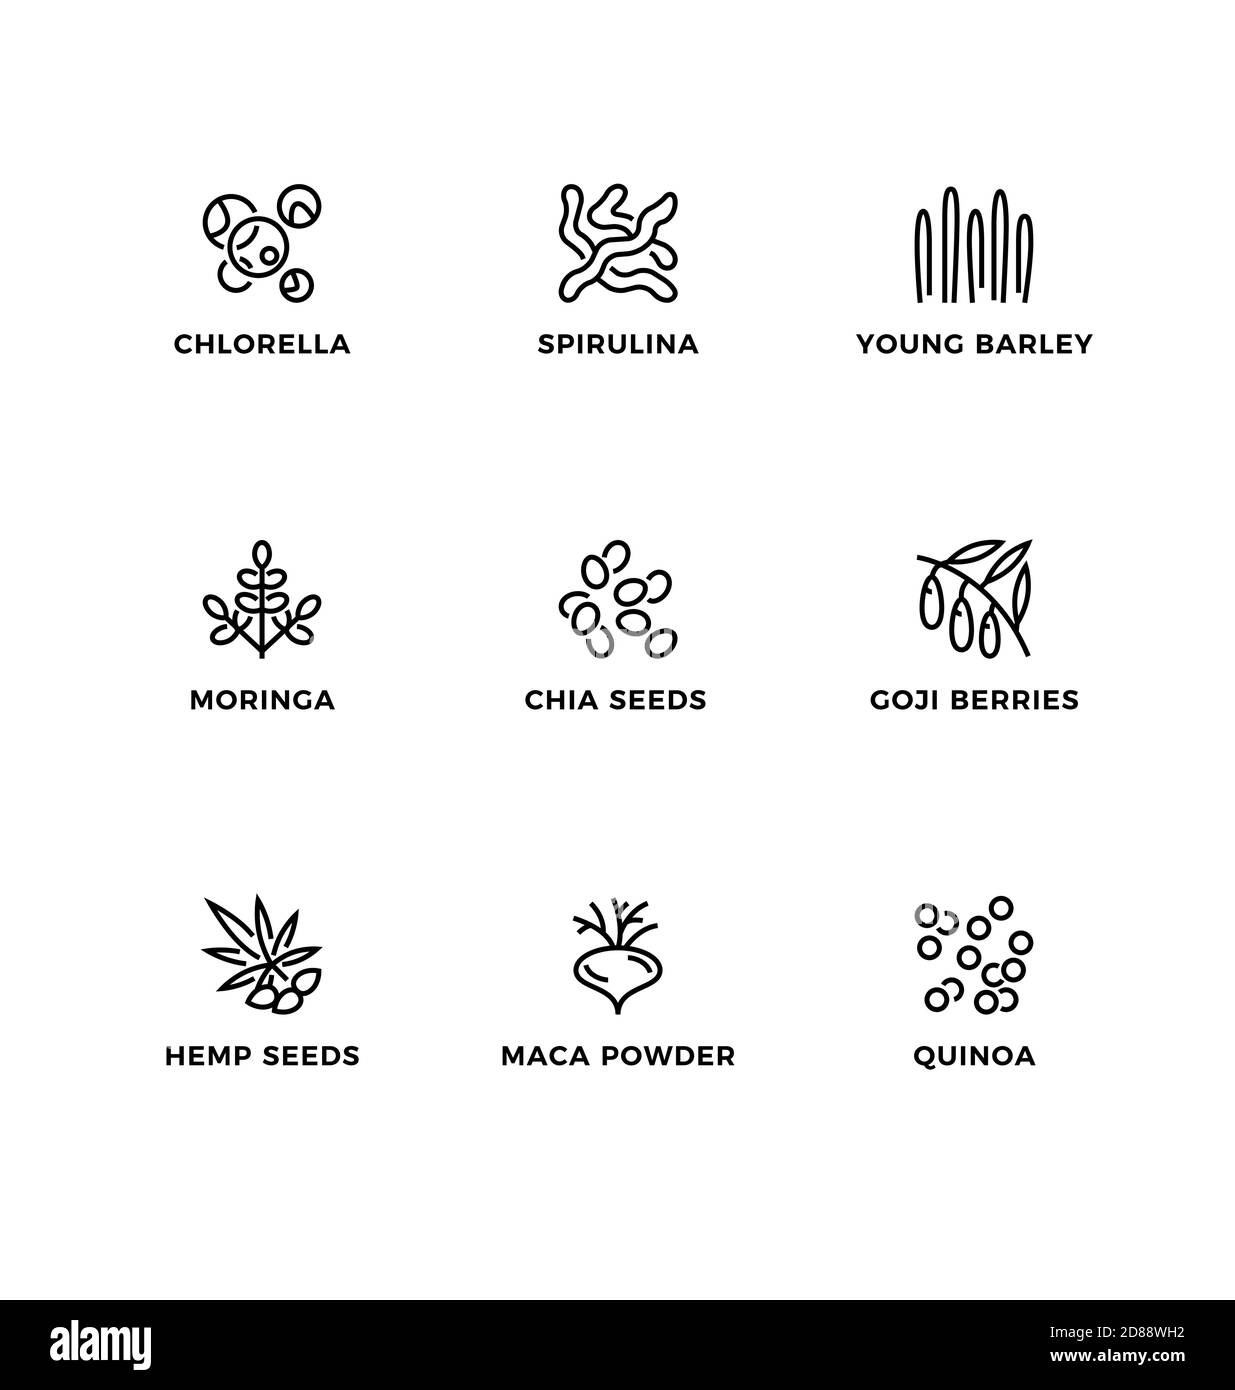 Vektor-Set von Design-Elementen, Logo-Design-Vorlage, Symbole und Abzeichen für gesunde Lebensmittel, Superfood. Liniensymbole gesetzt, bearbeitbare Kontur. Stock Vektor